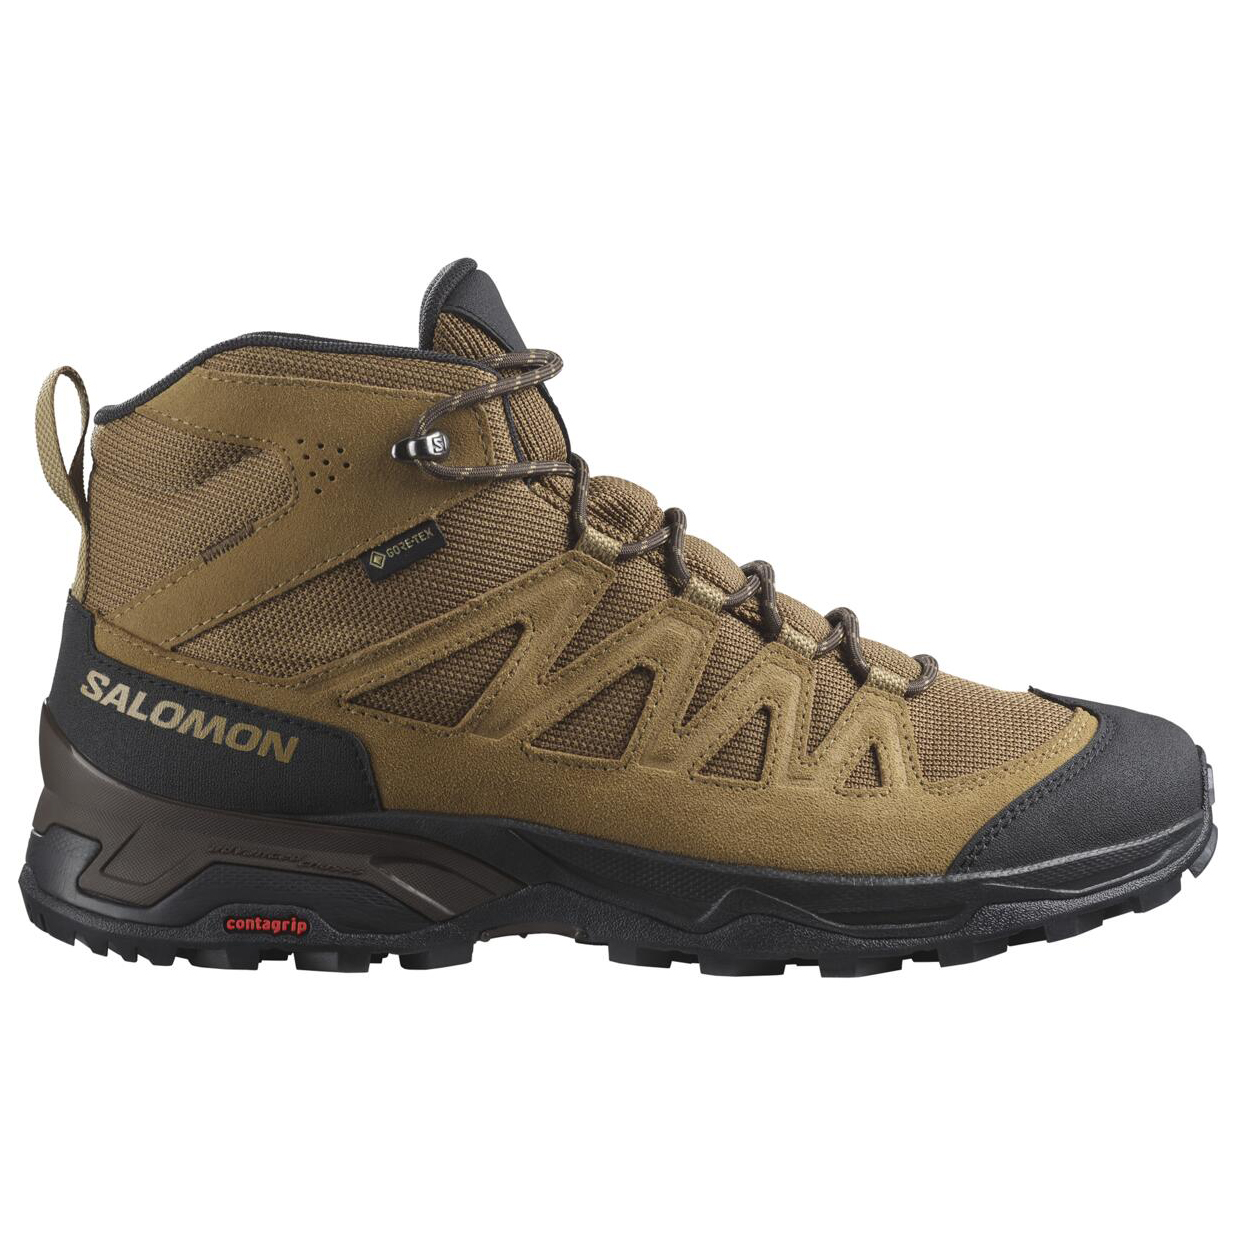 Ботинки для прогулки Salomon X Ward Leather Mid GTX, цвет Kangaroo/Black/Dull Gold